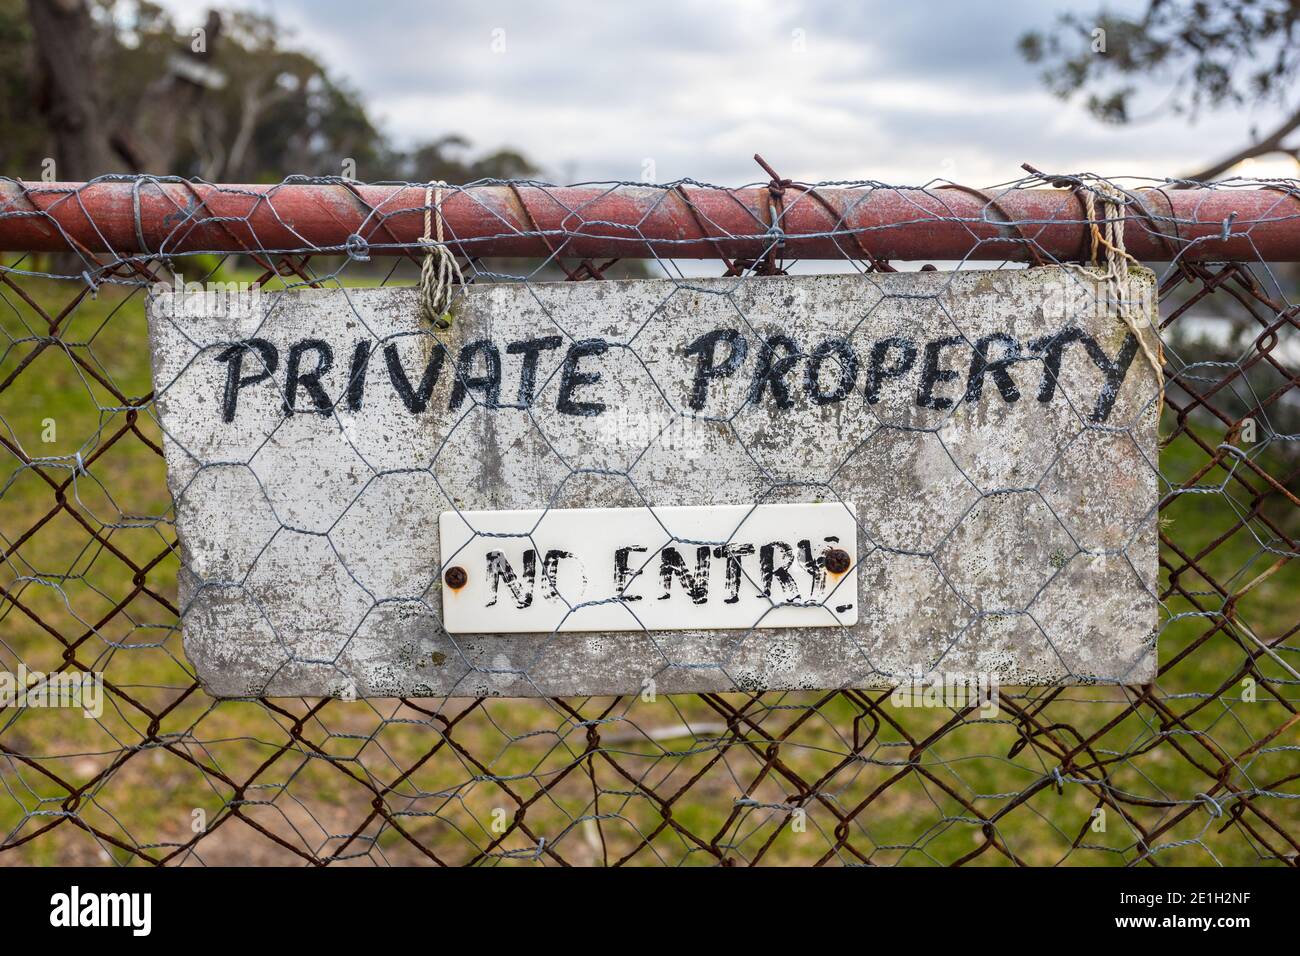 Una proprieta' privata intemperie e nessun cartello d'ingresso situato su un vecchio cancello della proprieta', South Coast NSW Australia Foto Stock